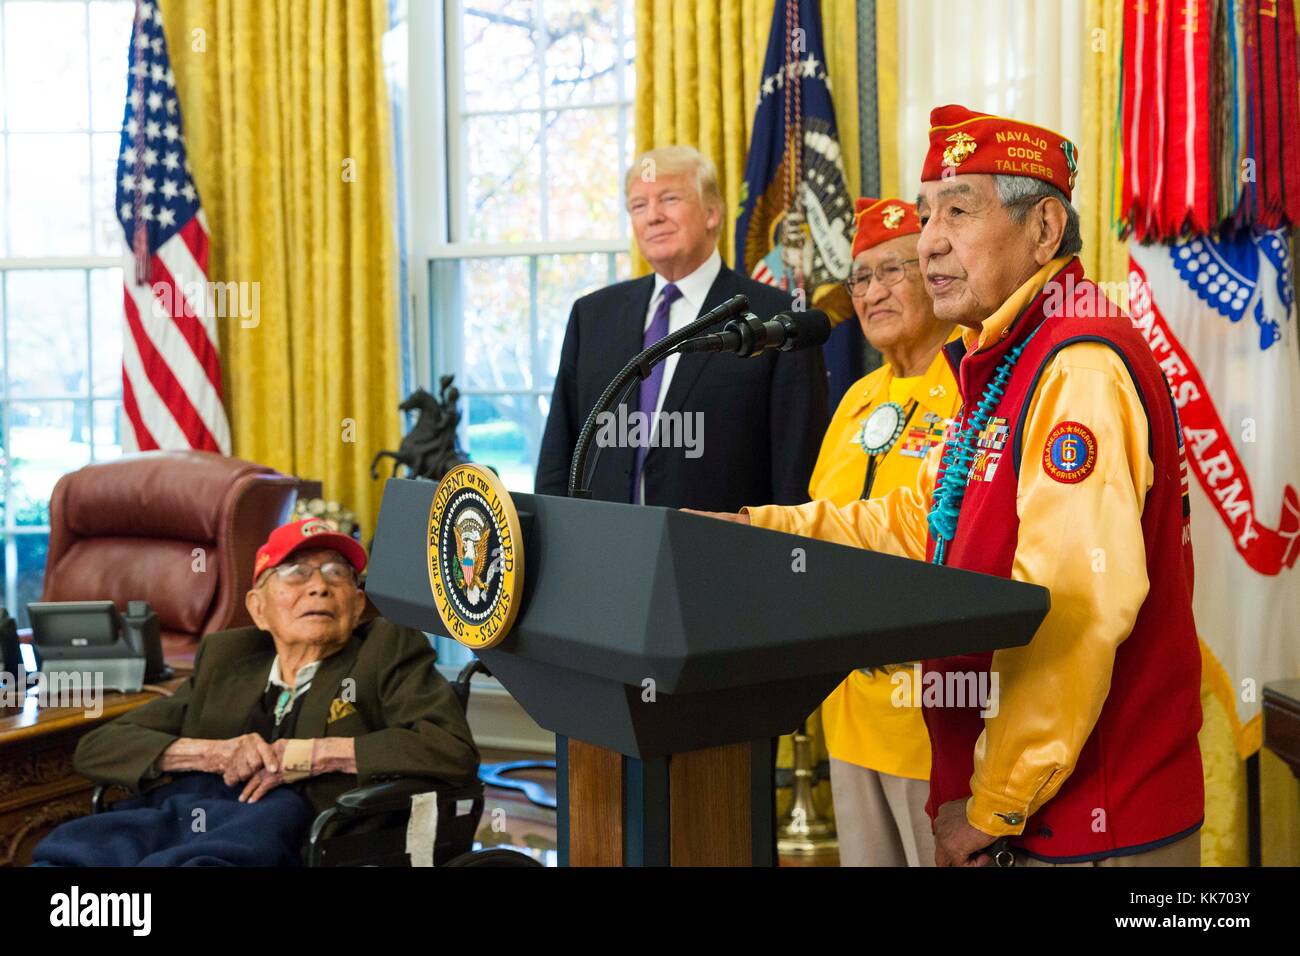 Il presidente statunitense Donald Trump con nativi americani codice navajo talker durante una cerimonia nell'ufficio ovale della casa bianca novembre 27, 2017 a Washington, DC. Foto Stock